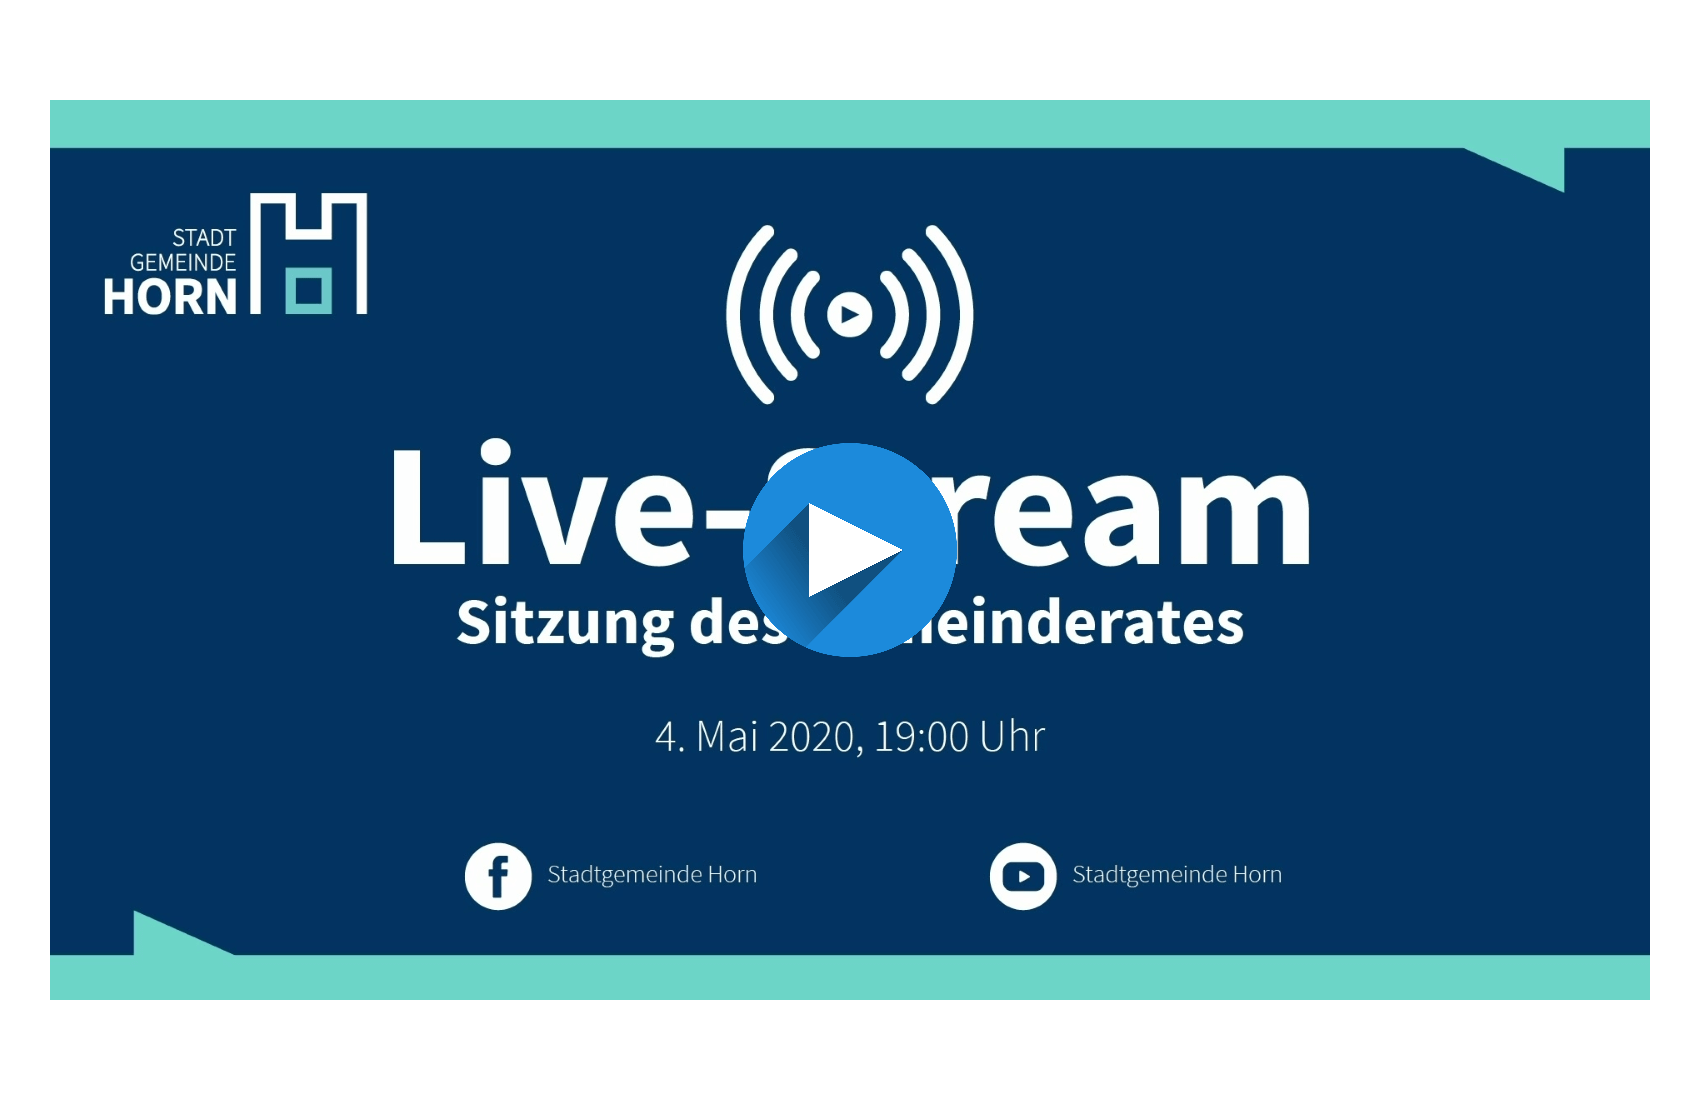 Live-Stream Sitzung des Gemeinderates - Liveübertragung im Vereinhaus Horn